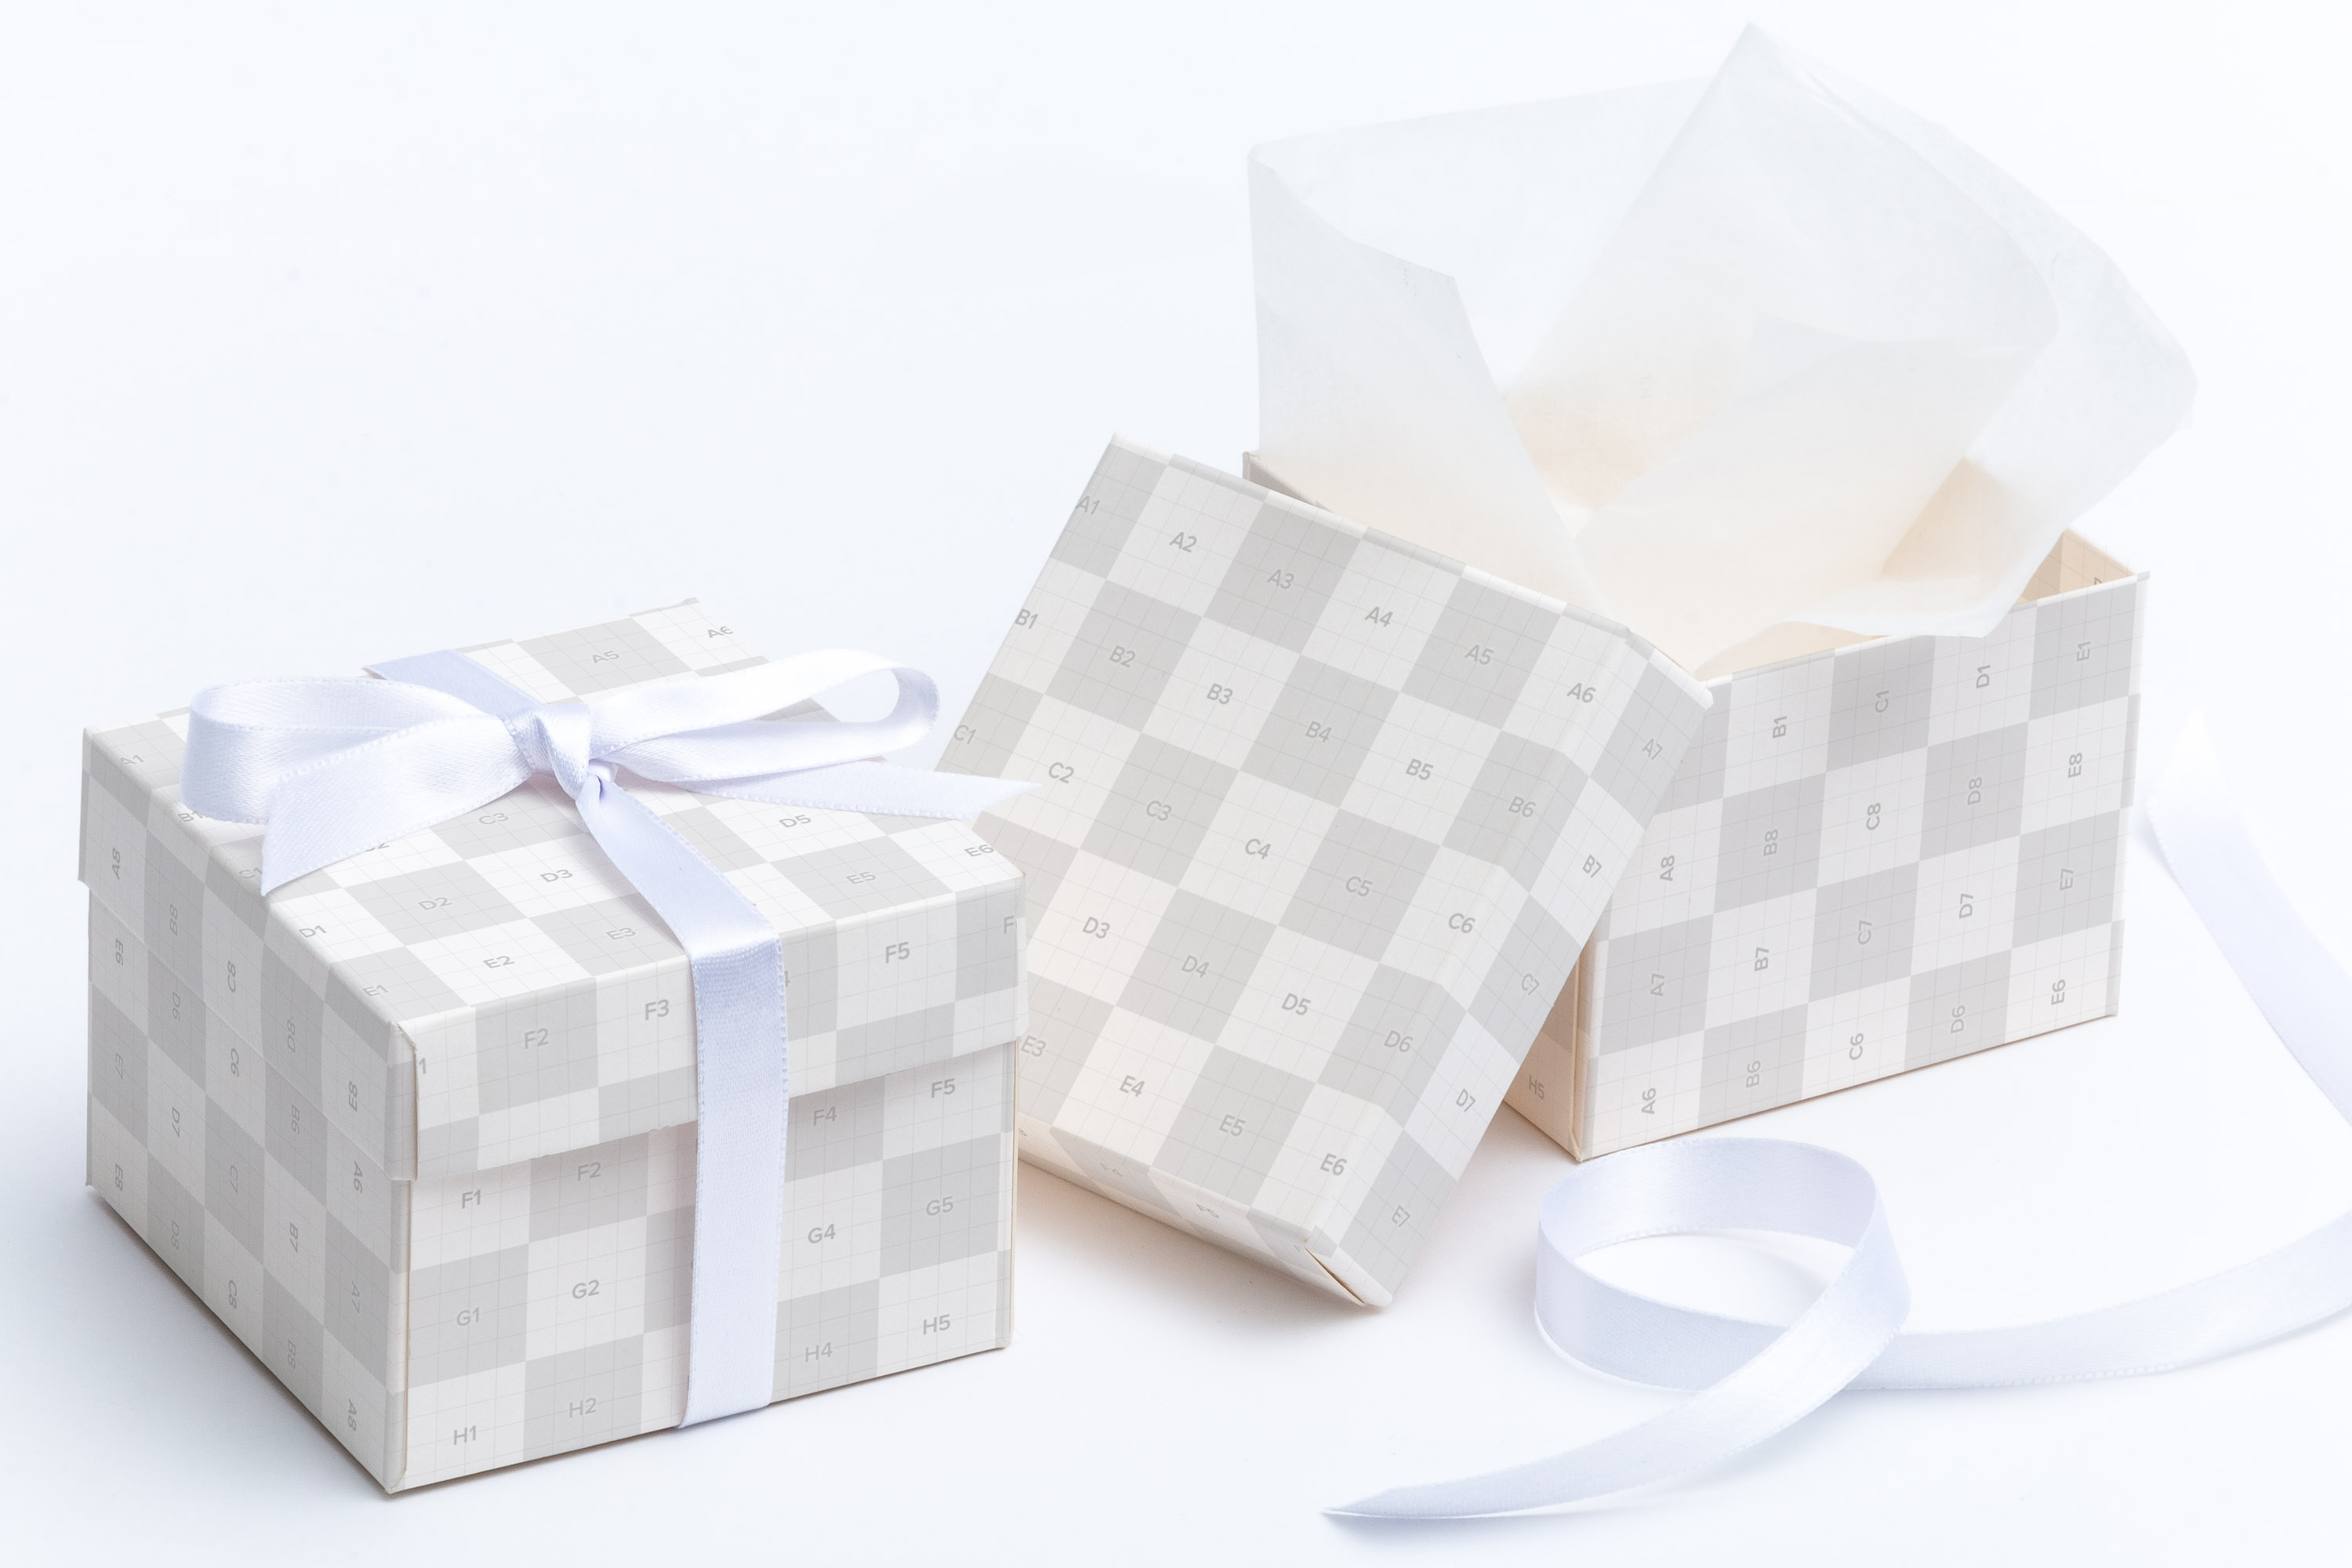 立方体礼品盒包装外观设计效果图样机01 Cube Gift Box Mockup 01插图(1)